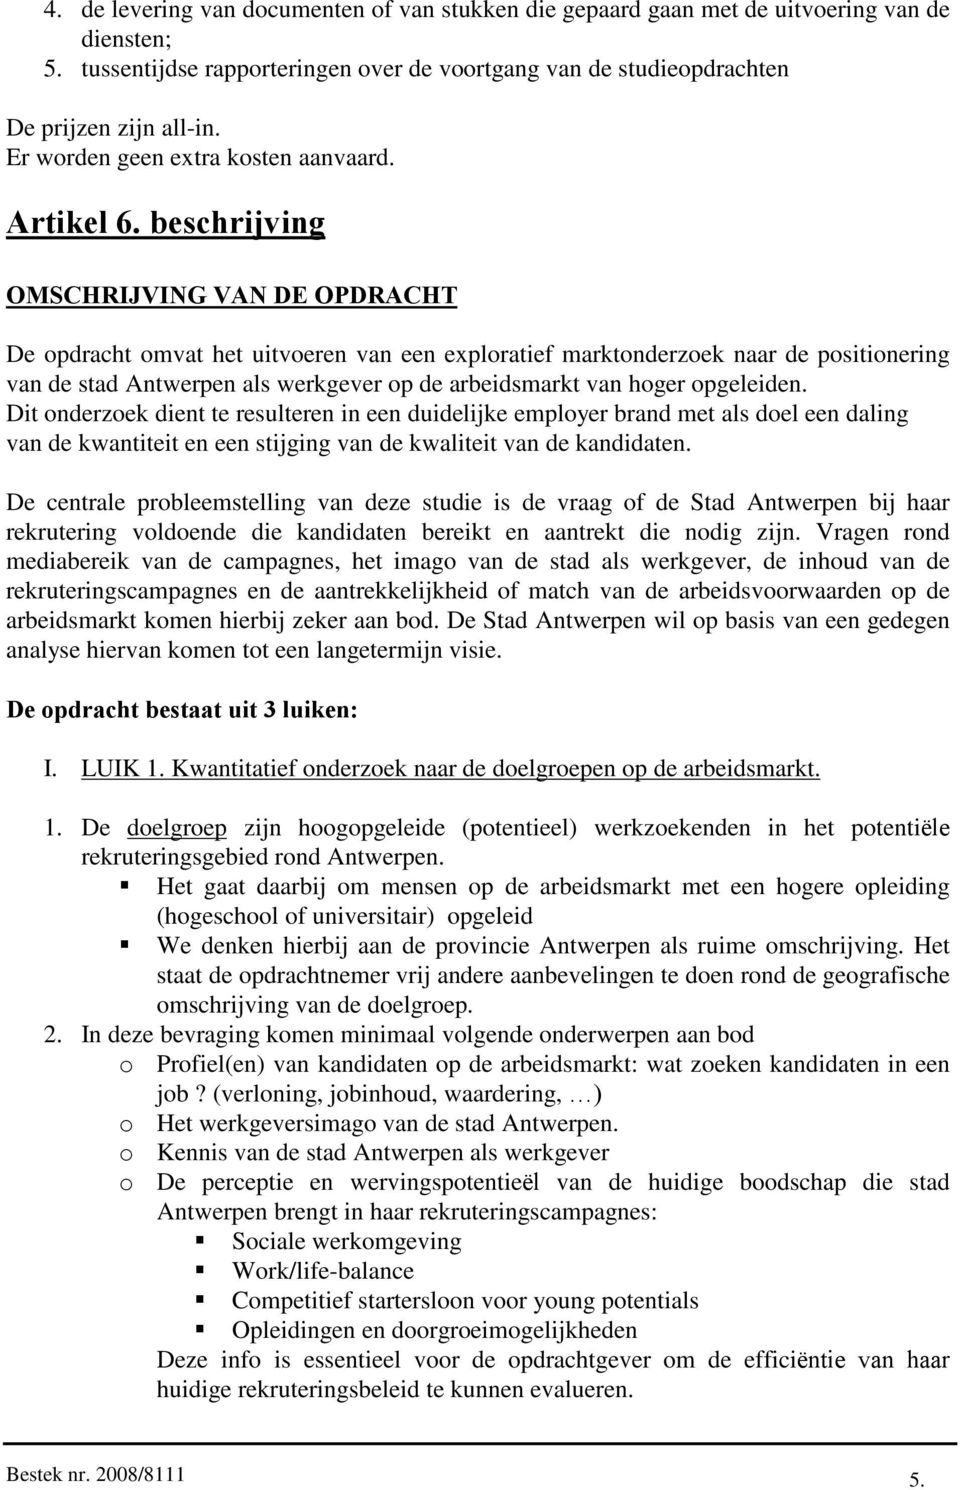 beschrijving OMSCHRIJVING VAN DE OPDRACHT De opdracht omvat het uitvoeren van een exploratief marktonderzoek naar de positionering van de stad Antwerpen als werkgever op de arbeidsmarkt van hoger